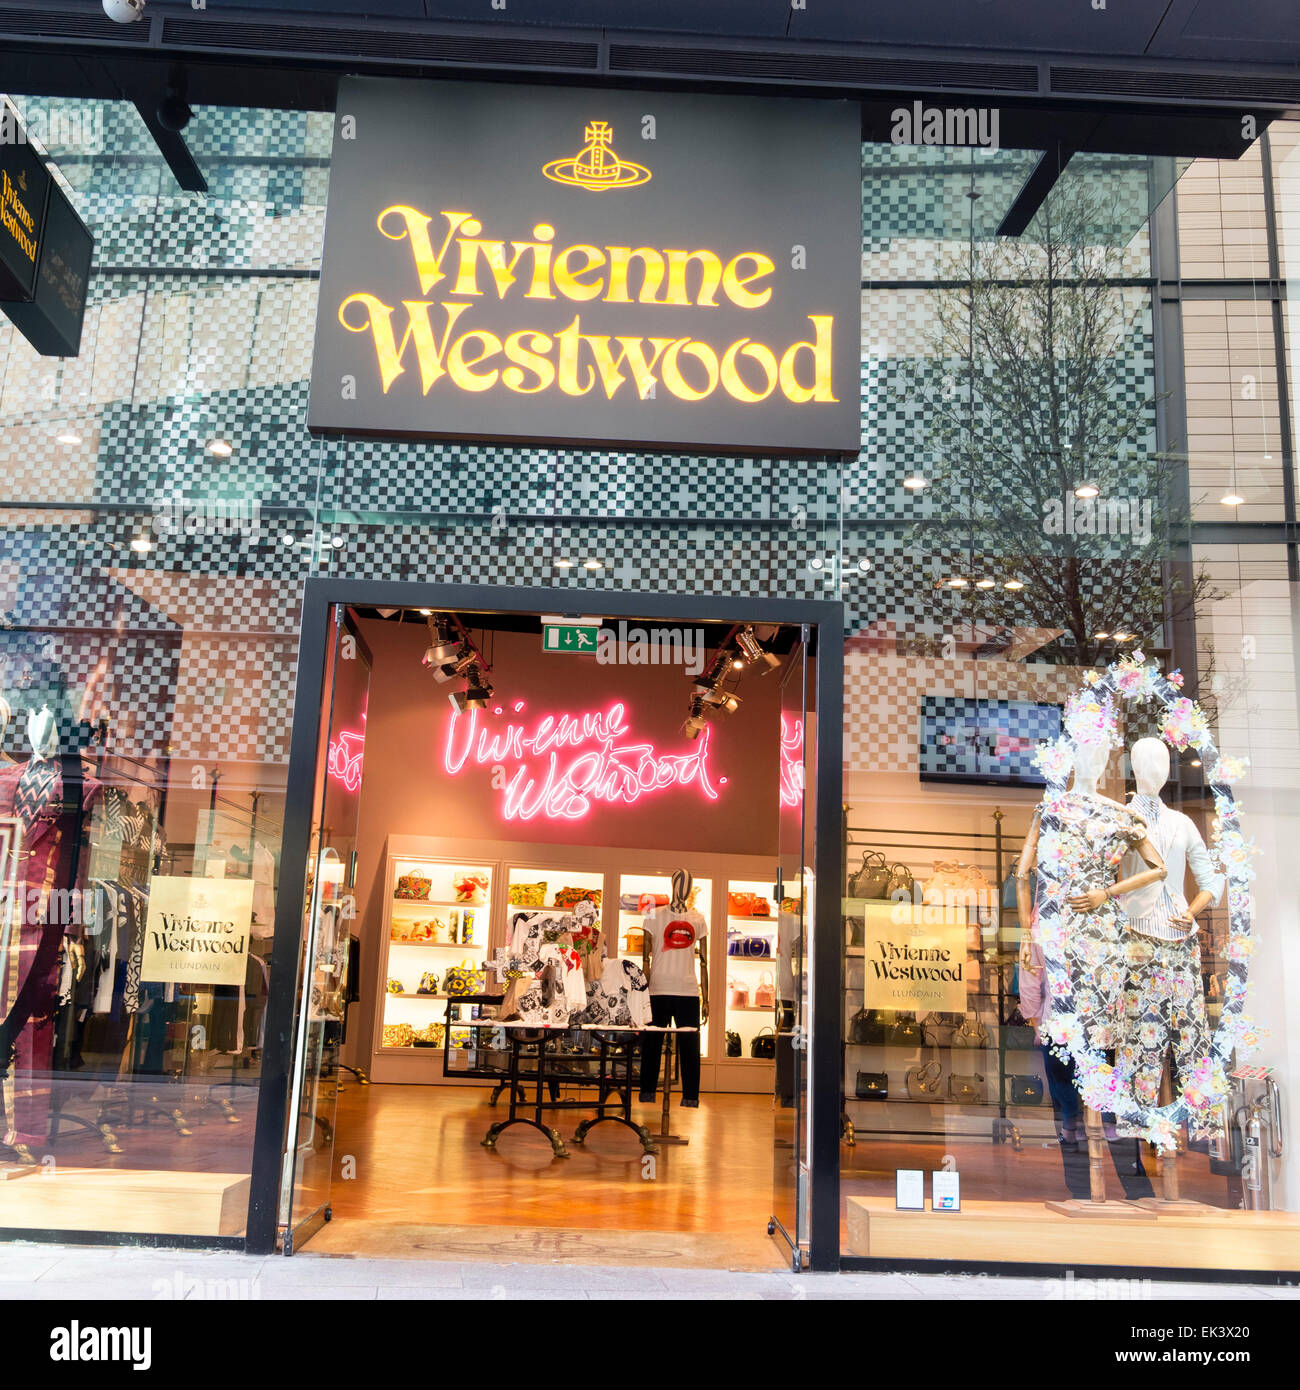 Vivienne Westwood speichern, UK. Stockfoto